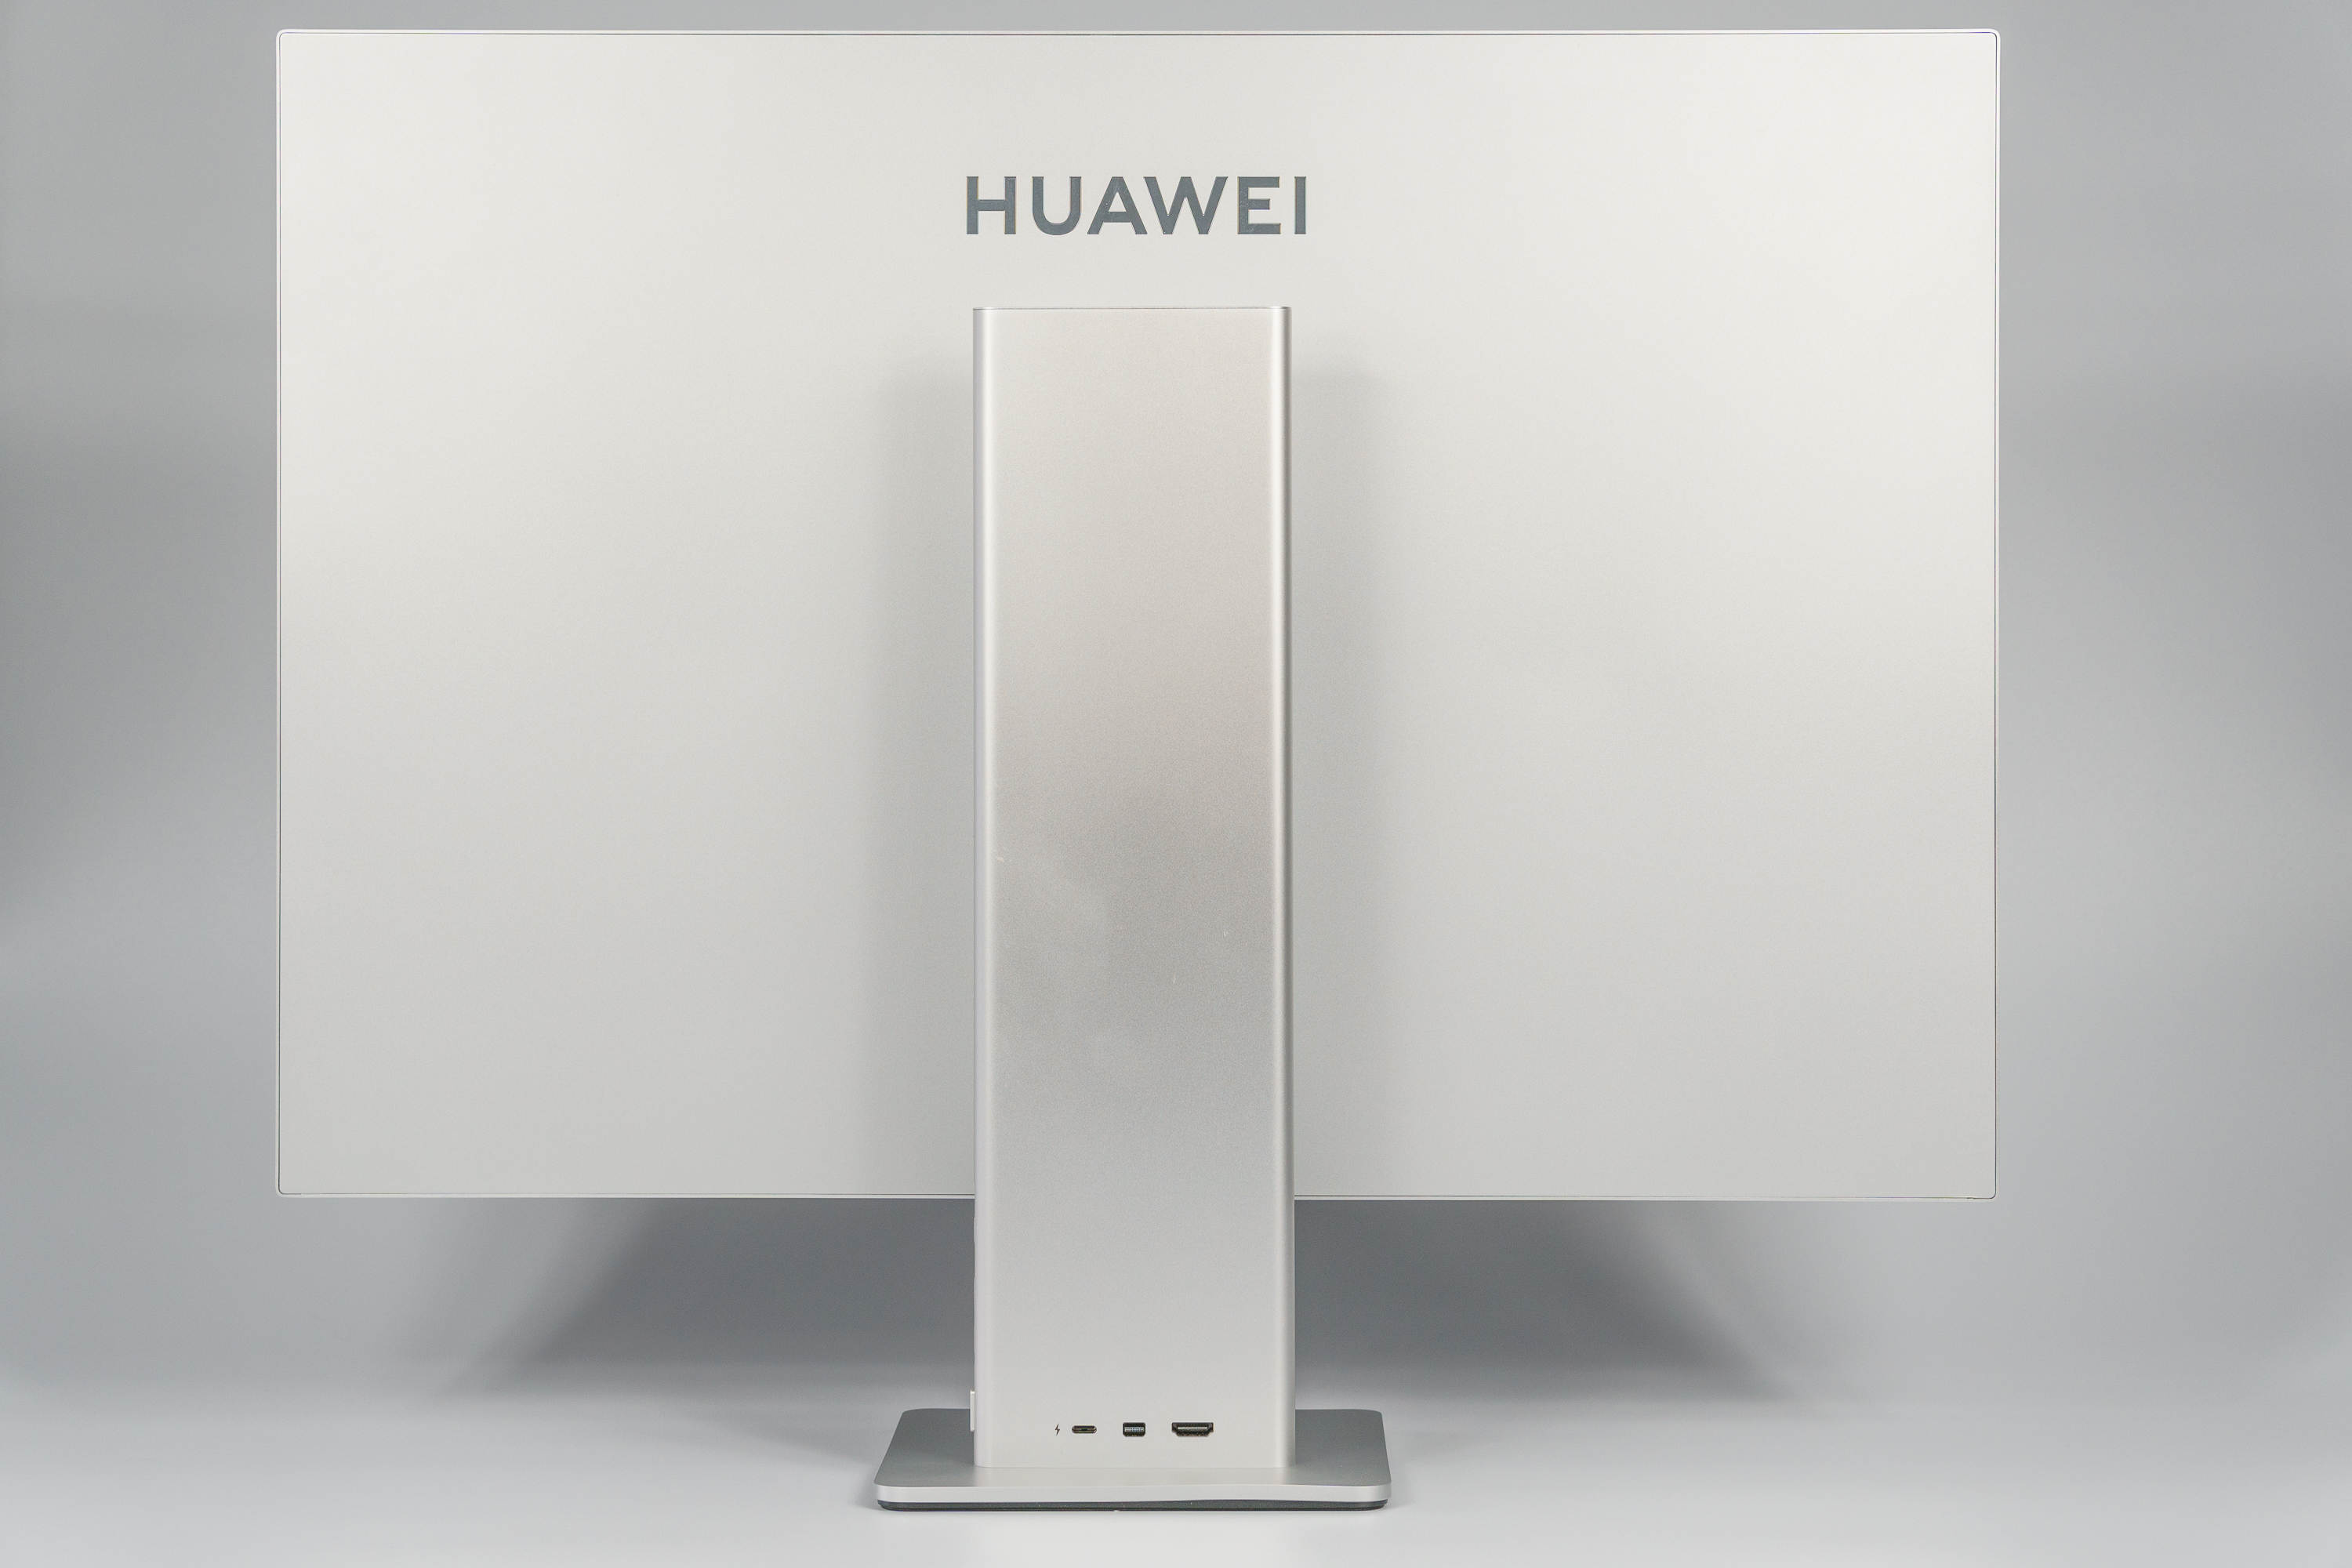 Huawei Mateview review - 28 inch premium class